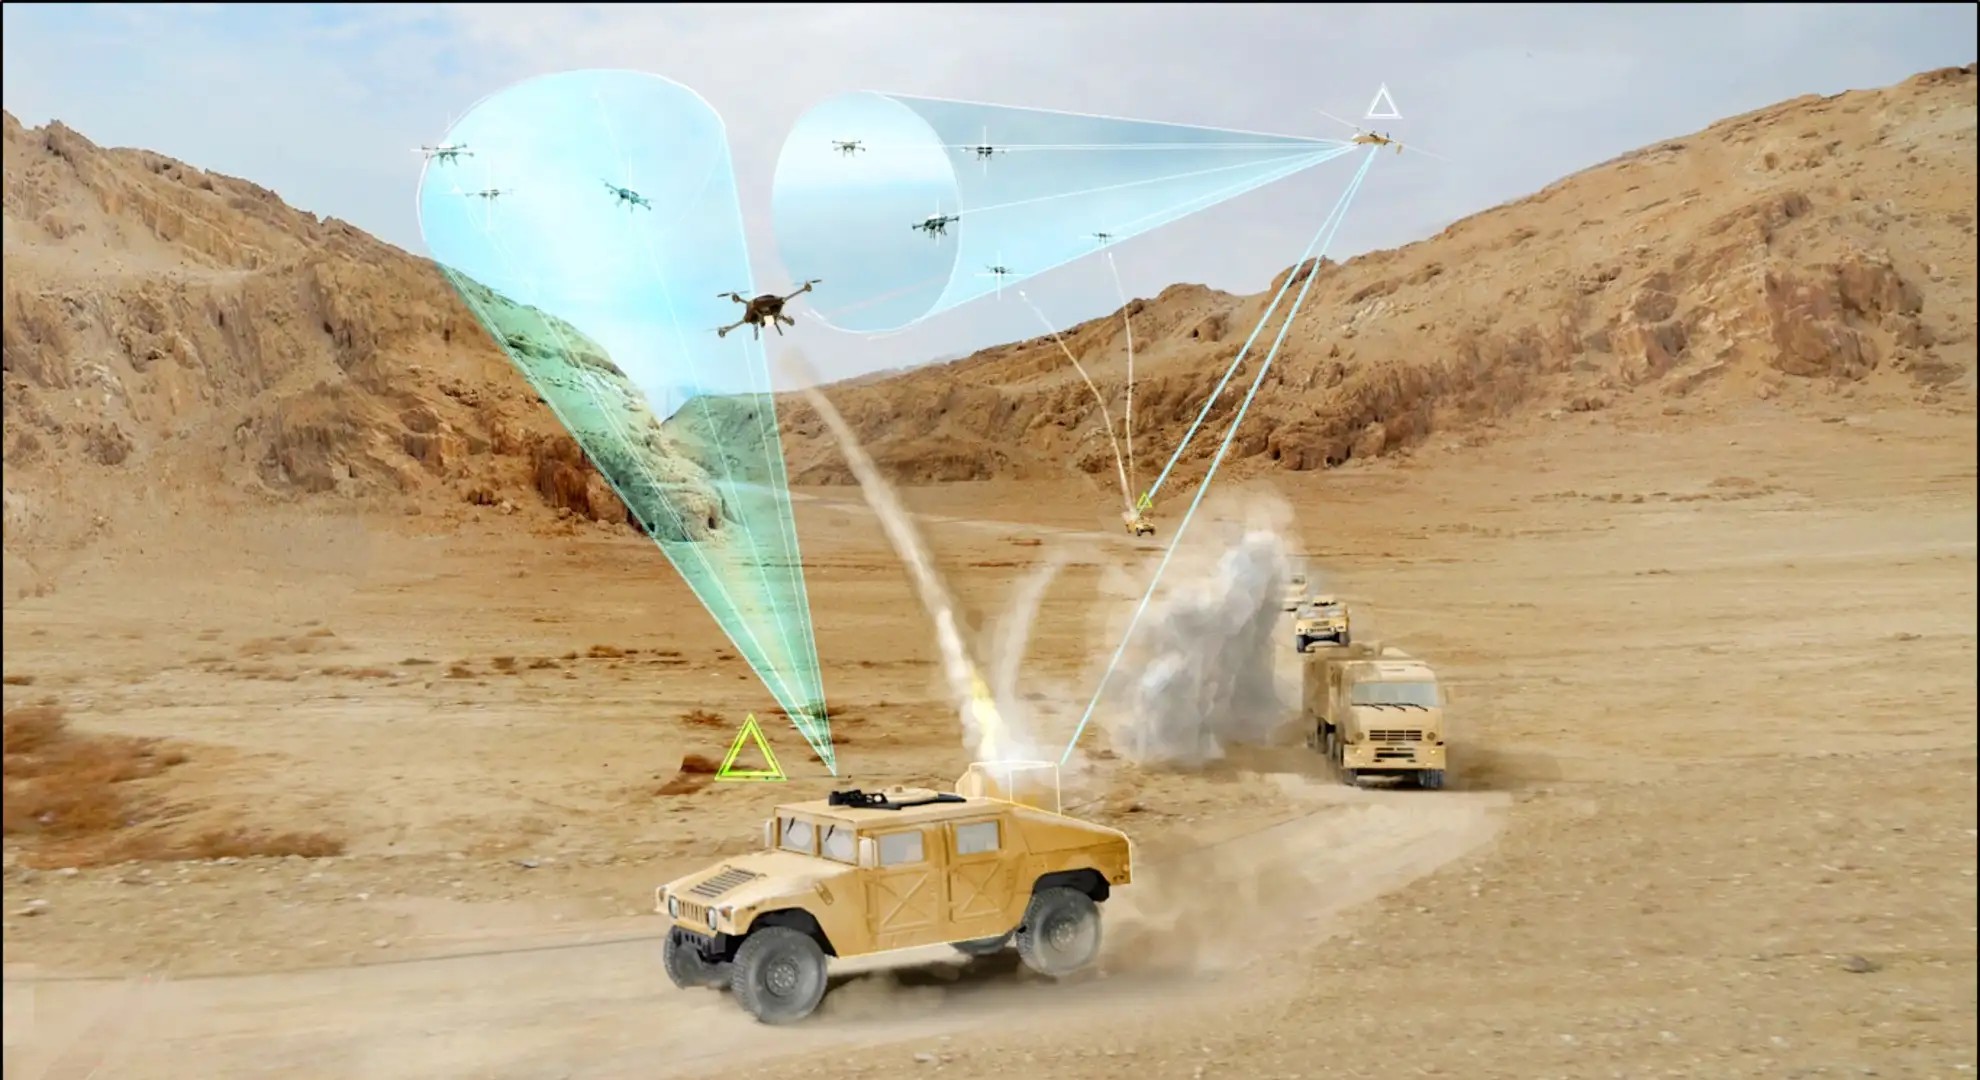 , Αντίμετρα για σμήνη drones ετοιμάζει ο αμερικανικός στρατός